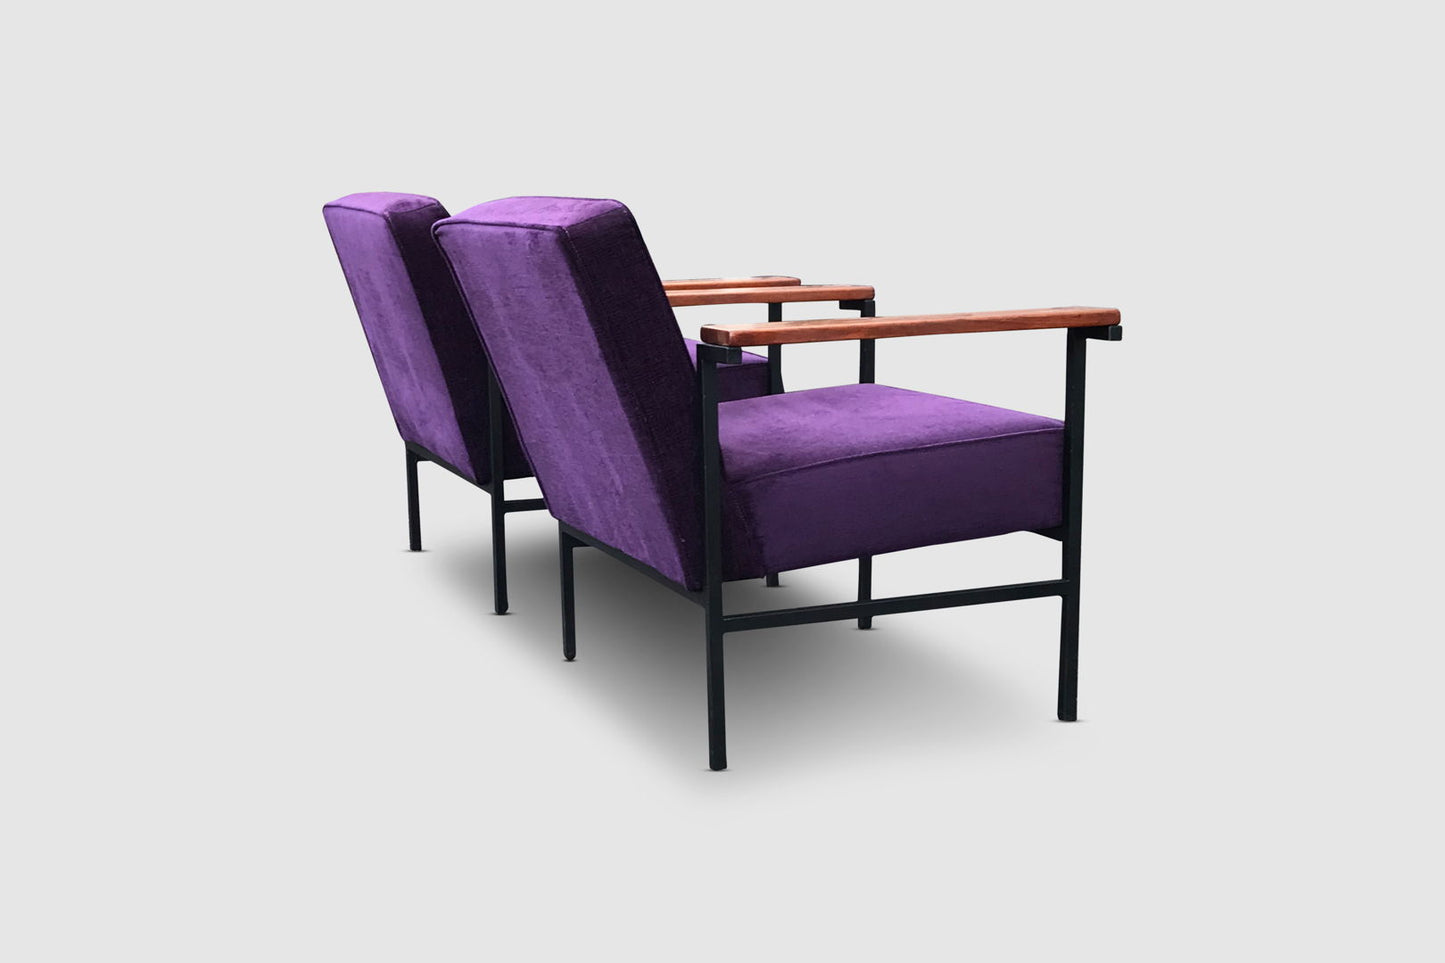 M2-44 modernist armchair by Wim den Boon Netherlands 1958, set of 2